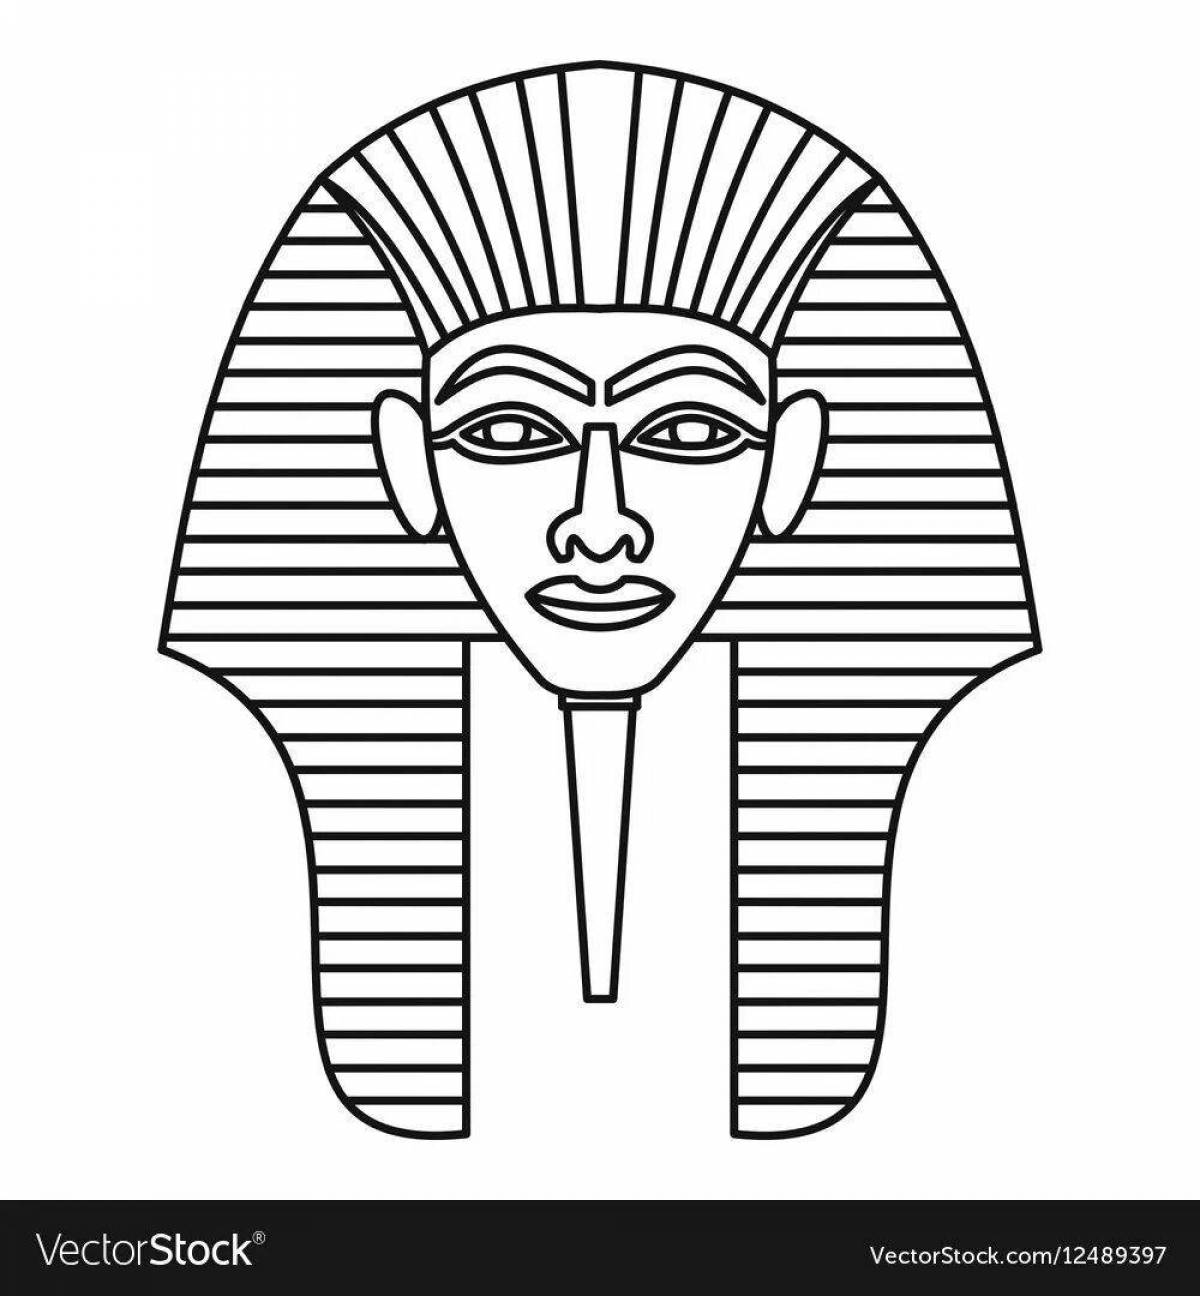 Generous mask of Pharaoh Tutankhamun coloring book